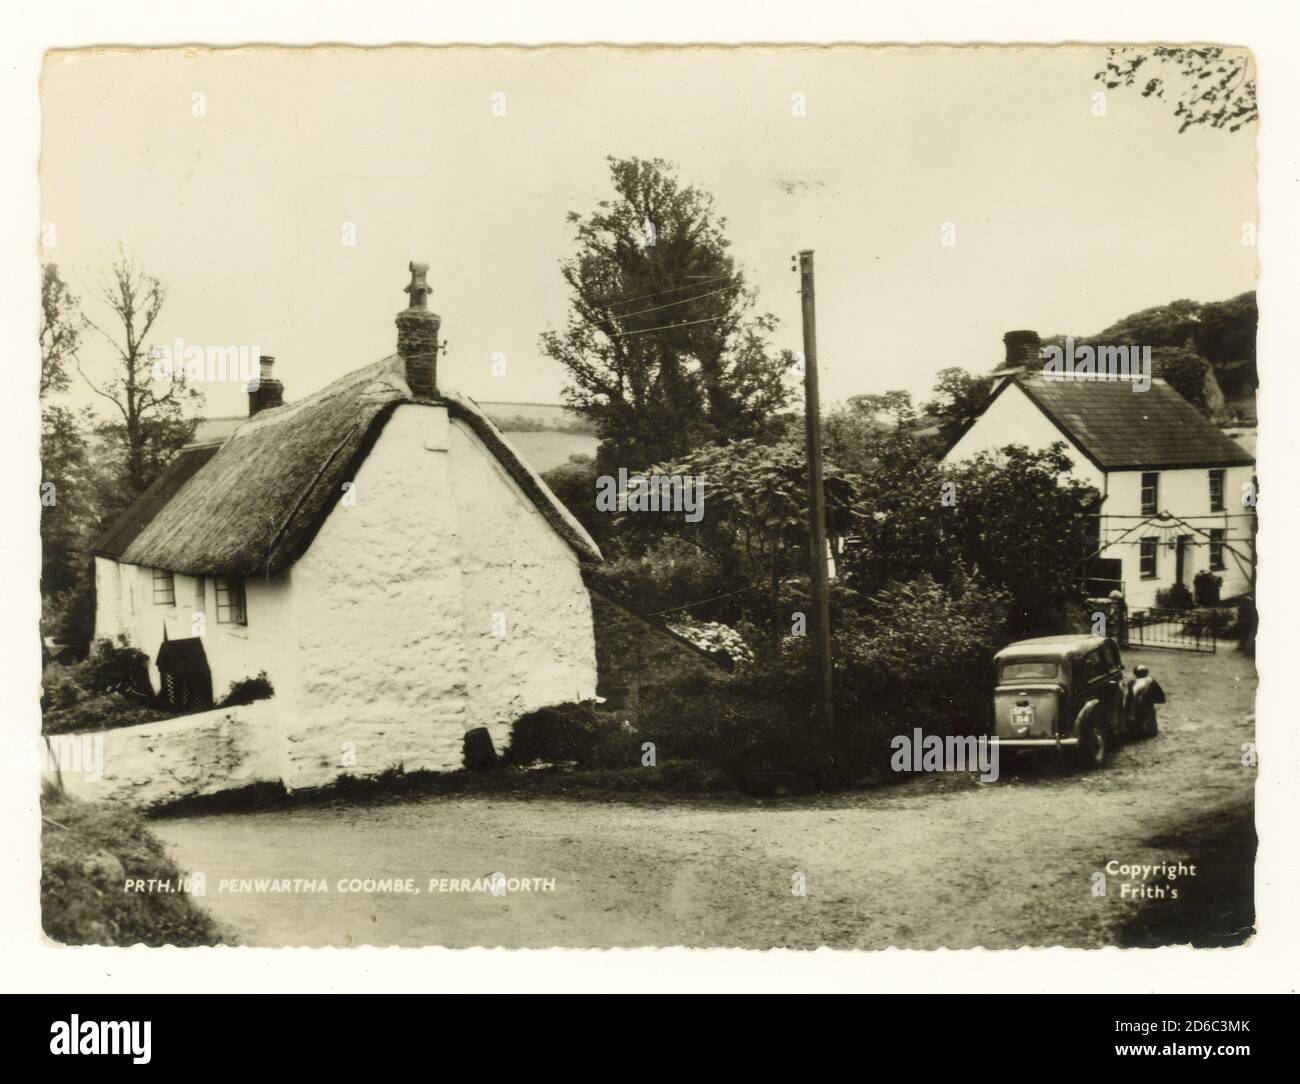 Bild von Penwartha Coombe aus den 1960er Jahren, mit reetgedeckten Cottages und Cob gebaut, Volksarchitektur, veröffentlicht im August 1970, Großbritannien Stockfoto